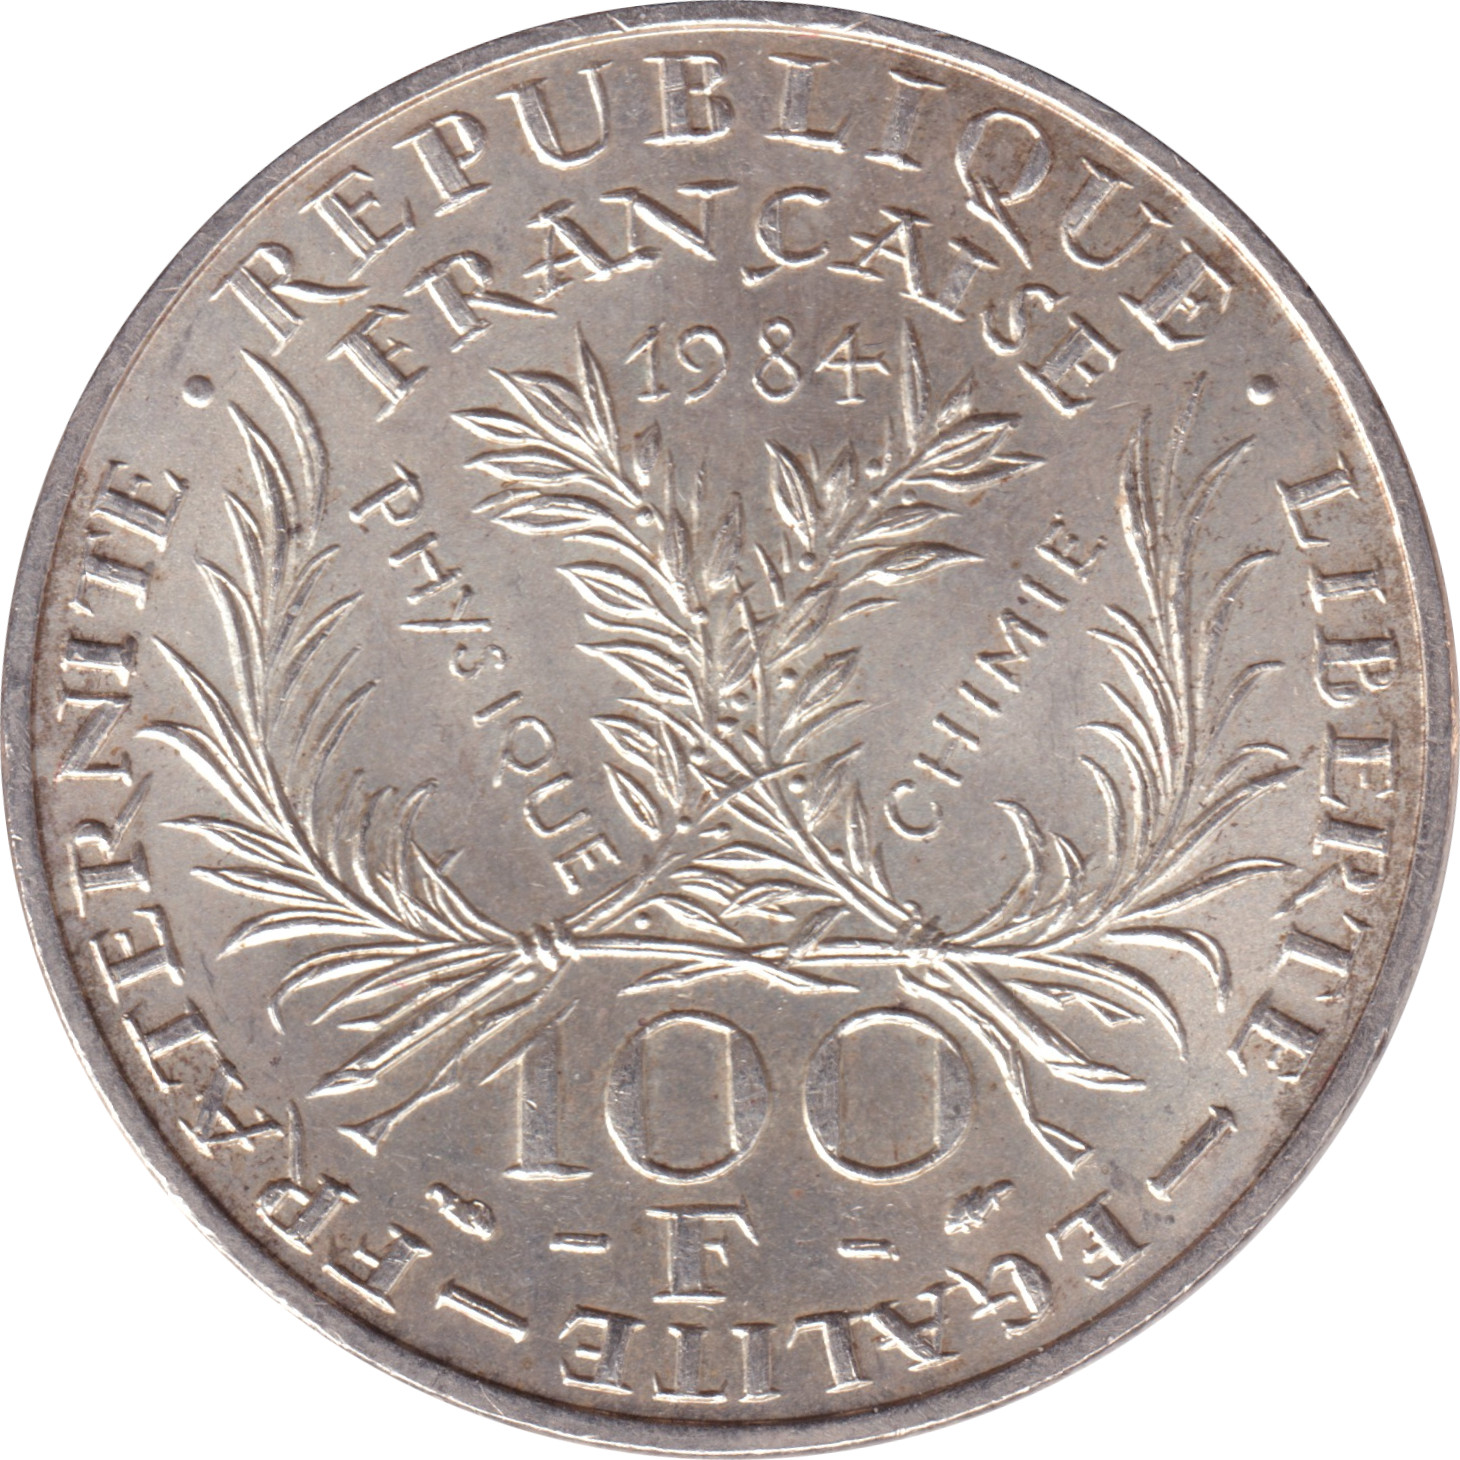 100 francs - Marie Curie